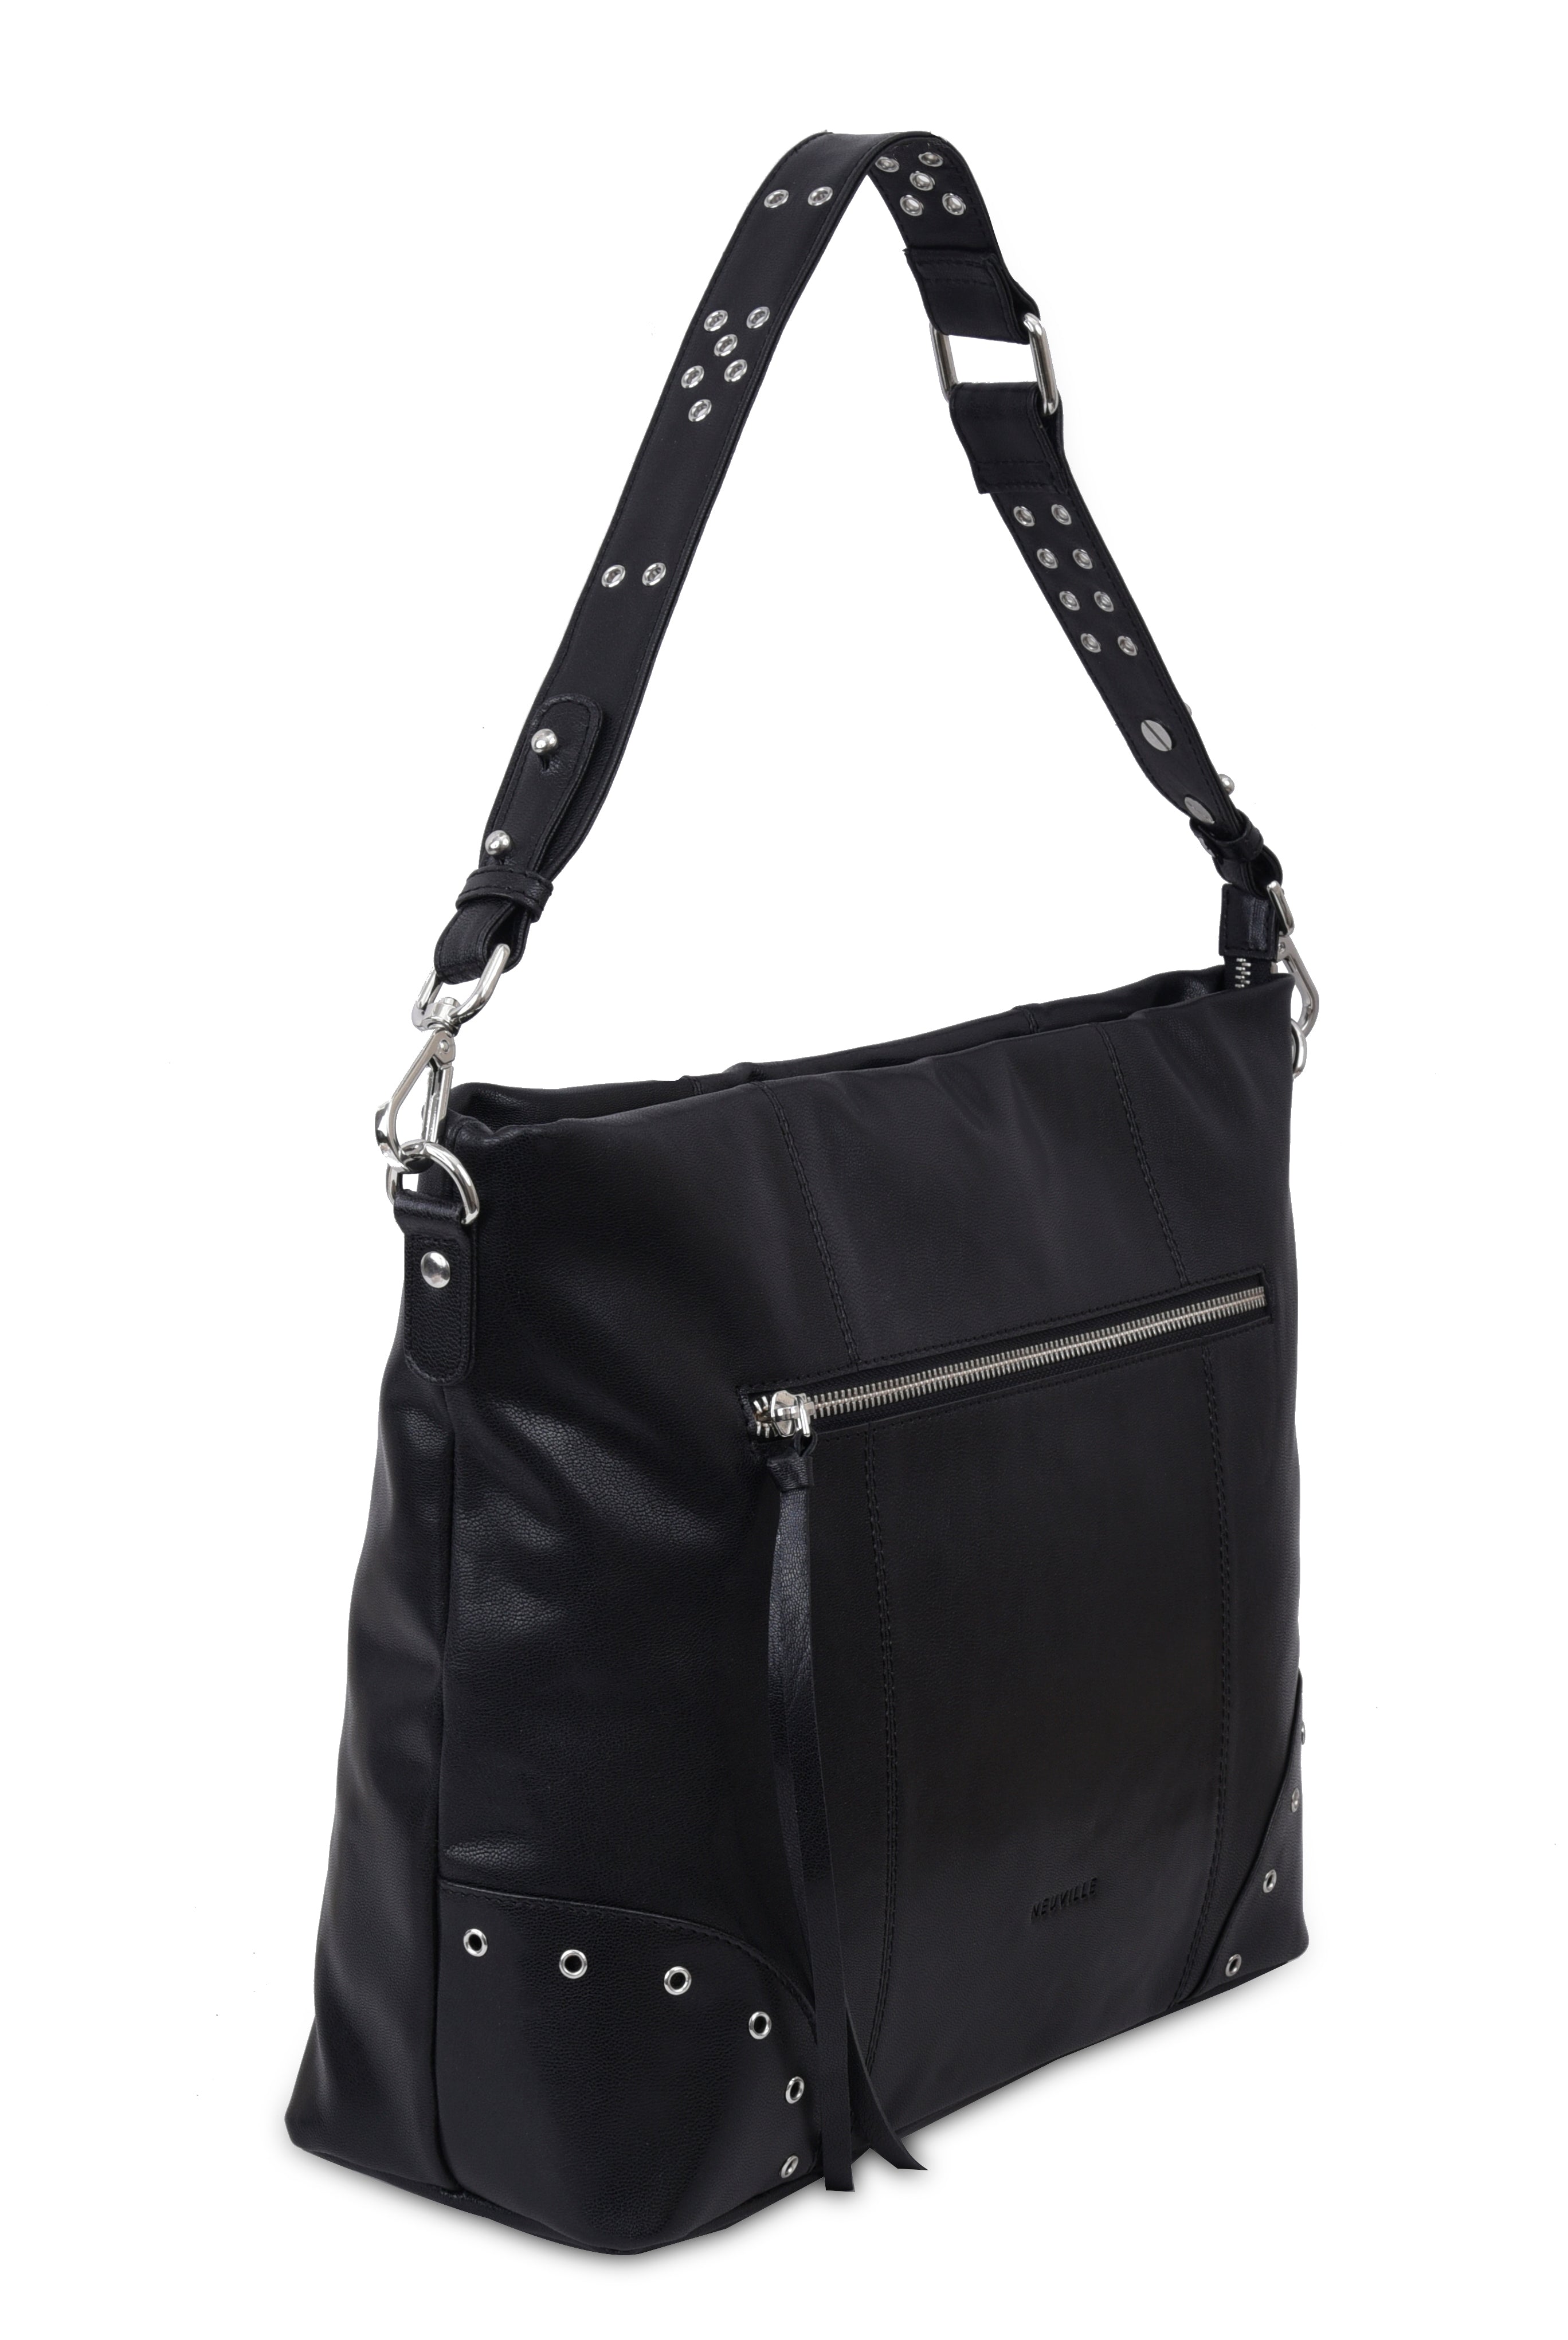 Orion black Neuville. Big black leather bag of the brand Neuville. Shoulder bag